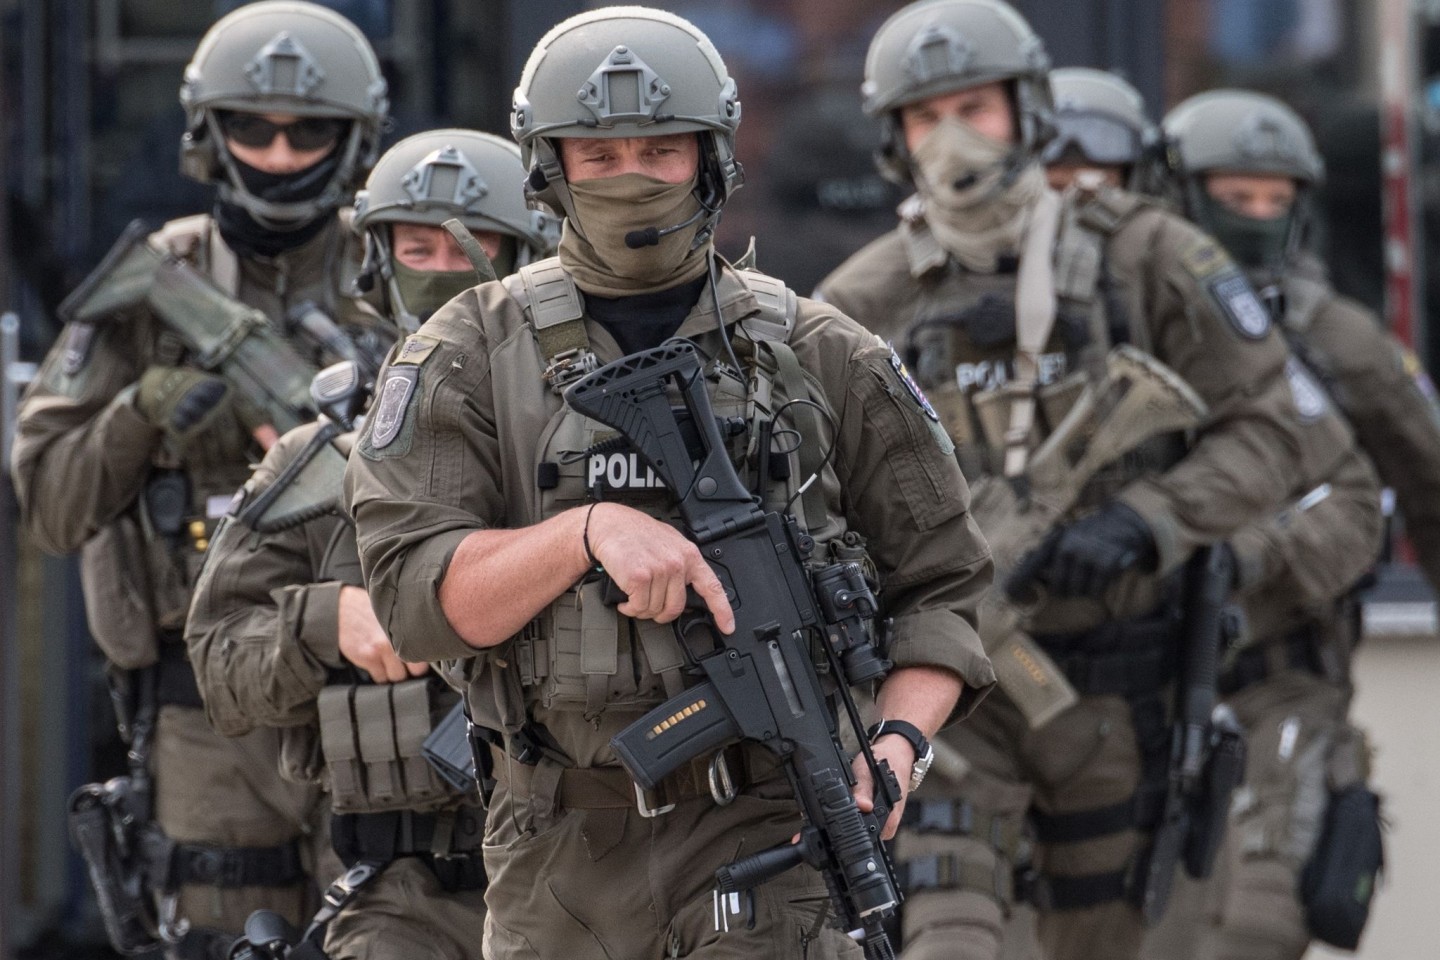 Beamte des Spezialeinsatzkommandos (SEK) der Polizei Frankfurt während einer Übung.